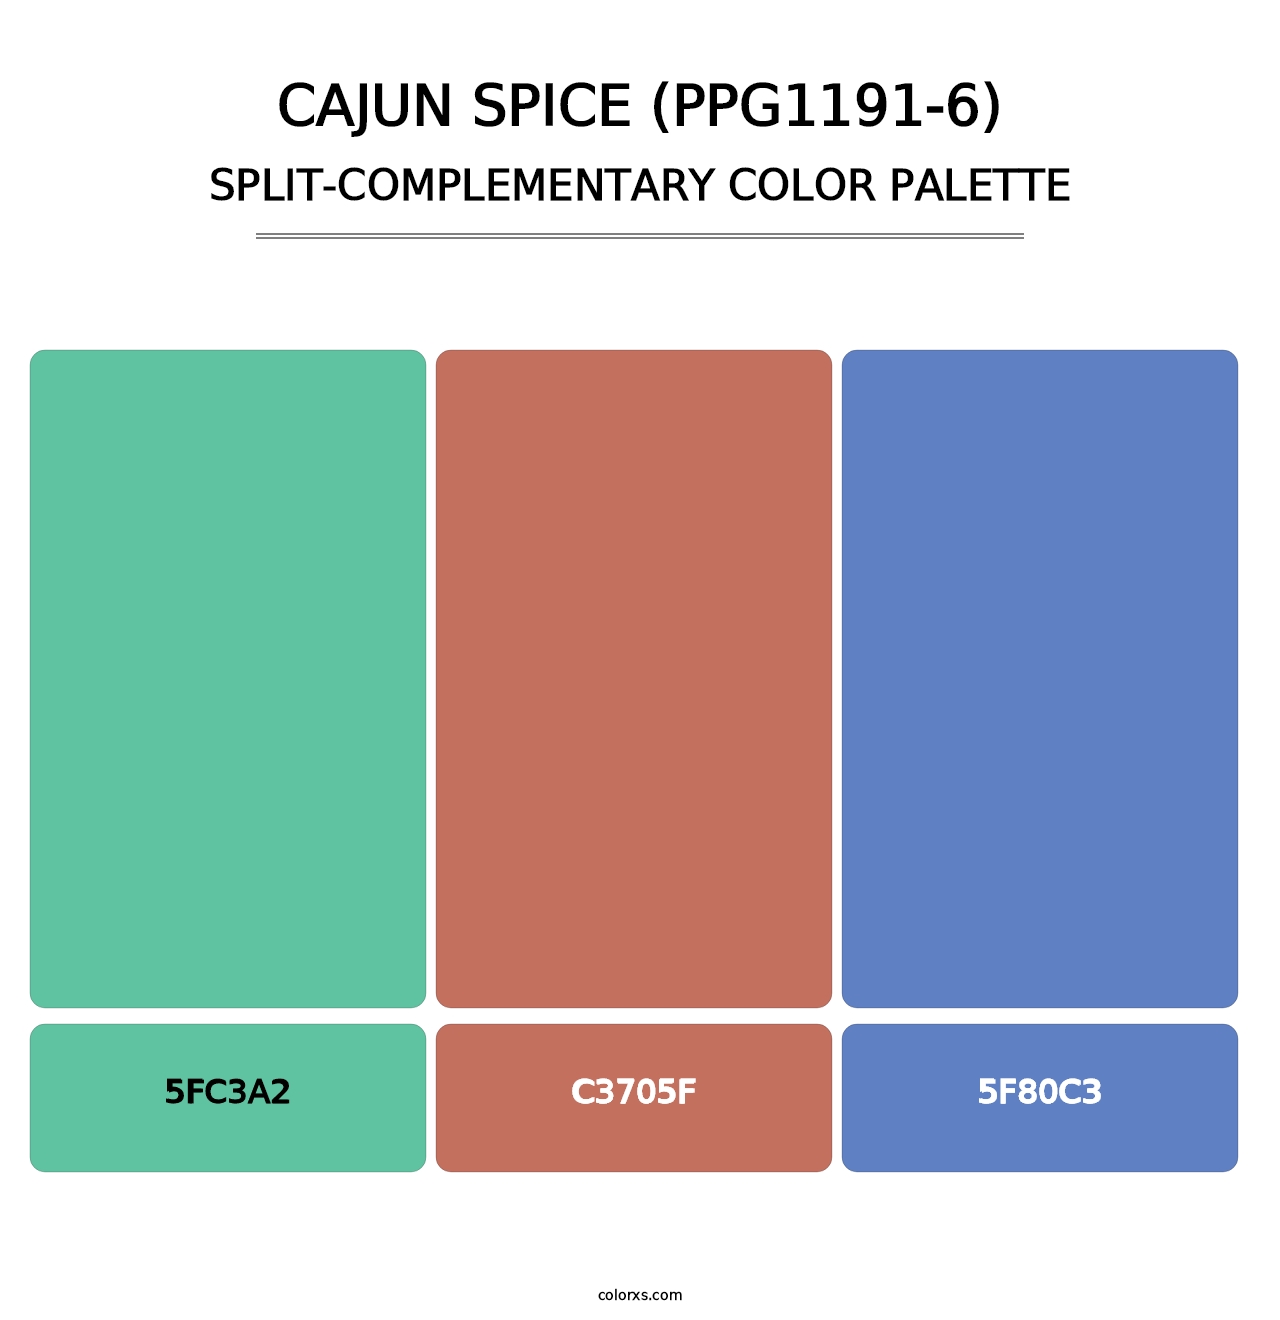 Cajun Spice (PPG1191-6) - Split-Complementary Color Palette